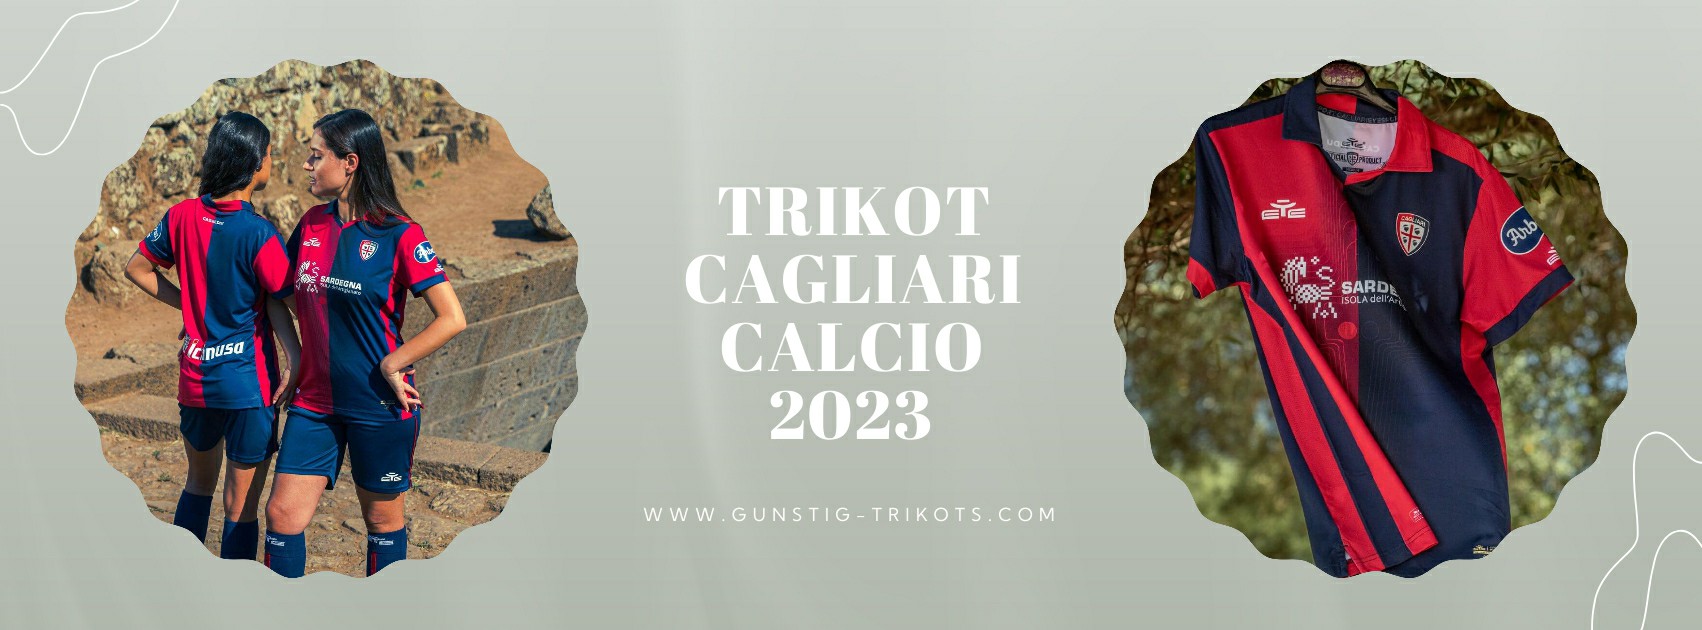 Cagliari Calcio Trikot 2023-2024